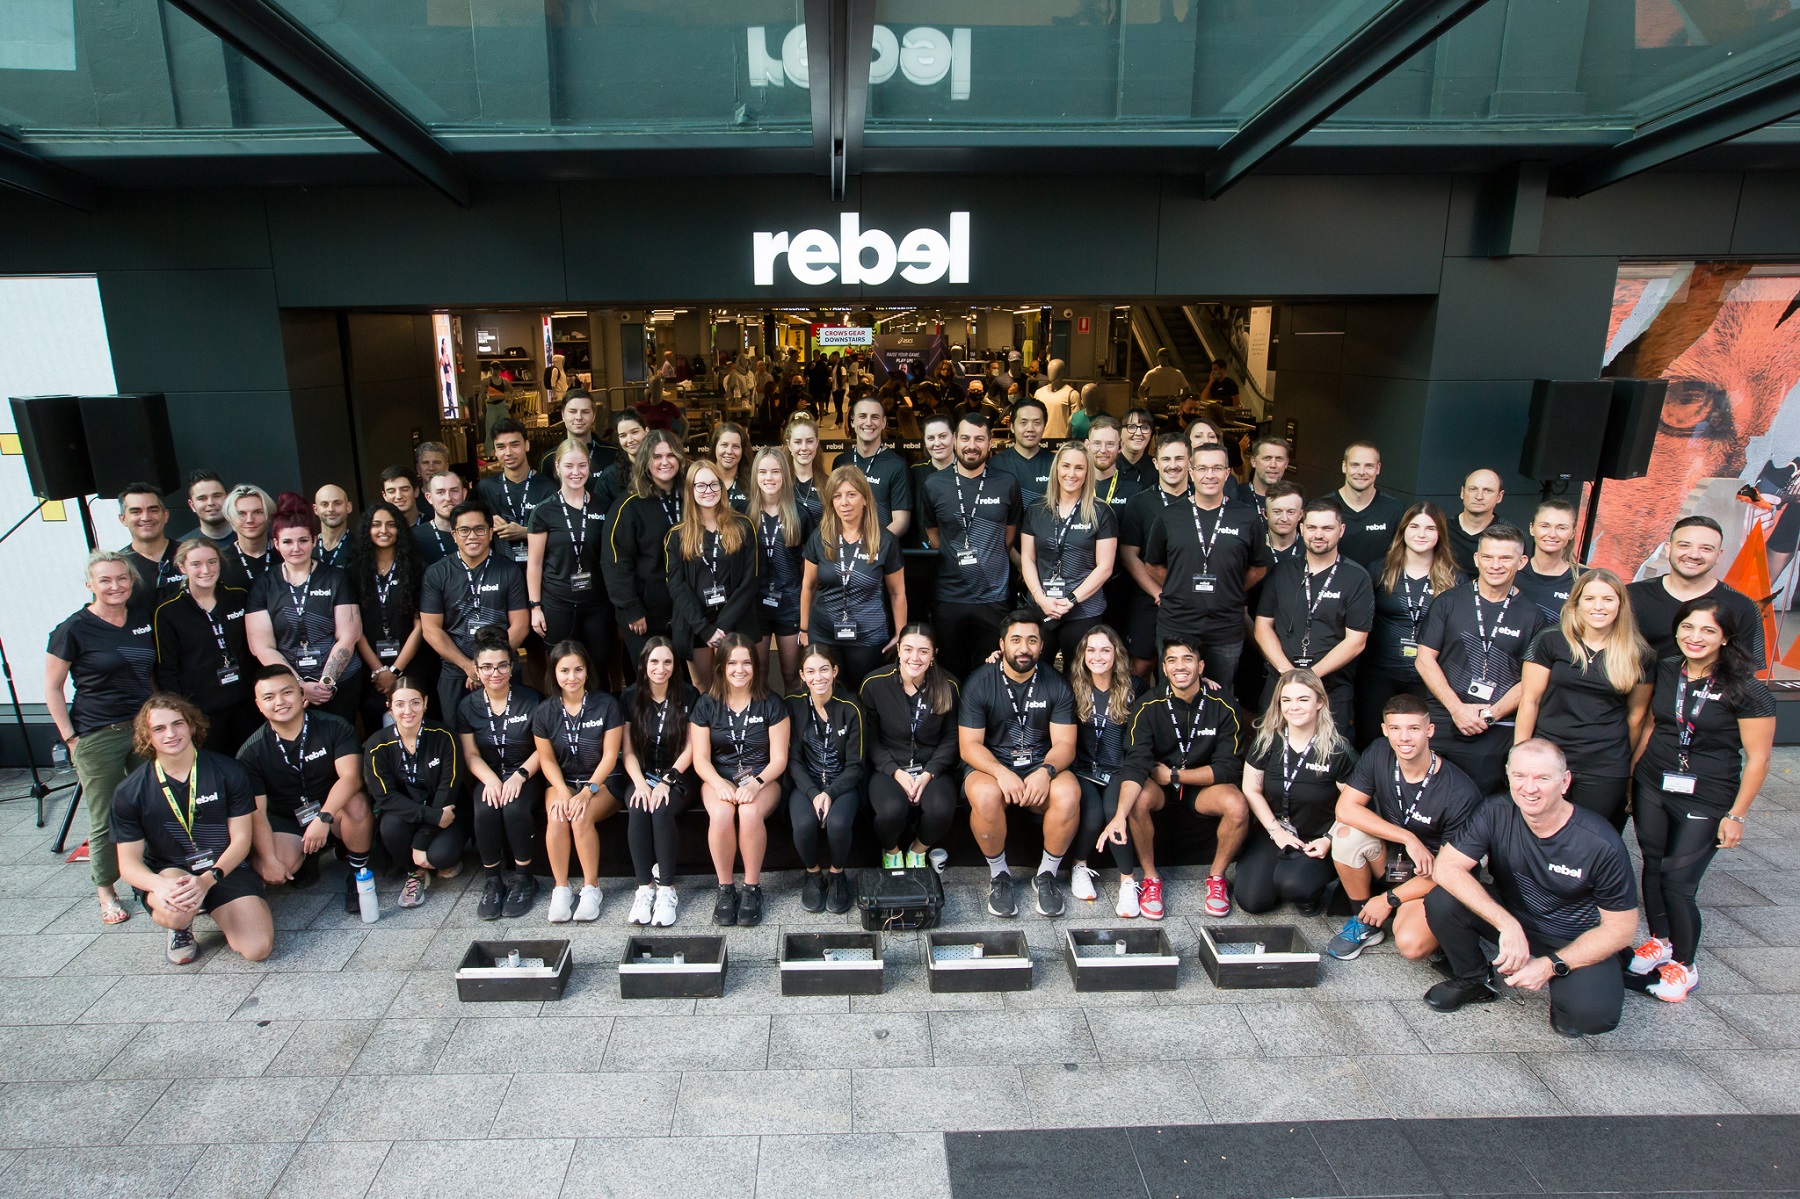 rebel sport Adelaide store opening v3 - retailbiz